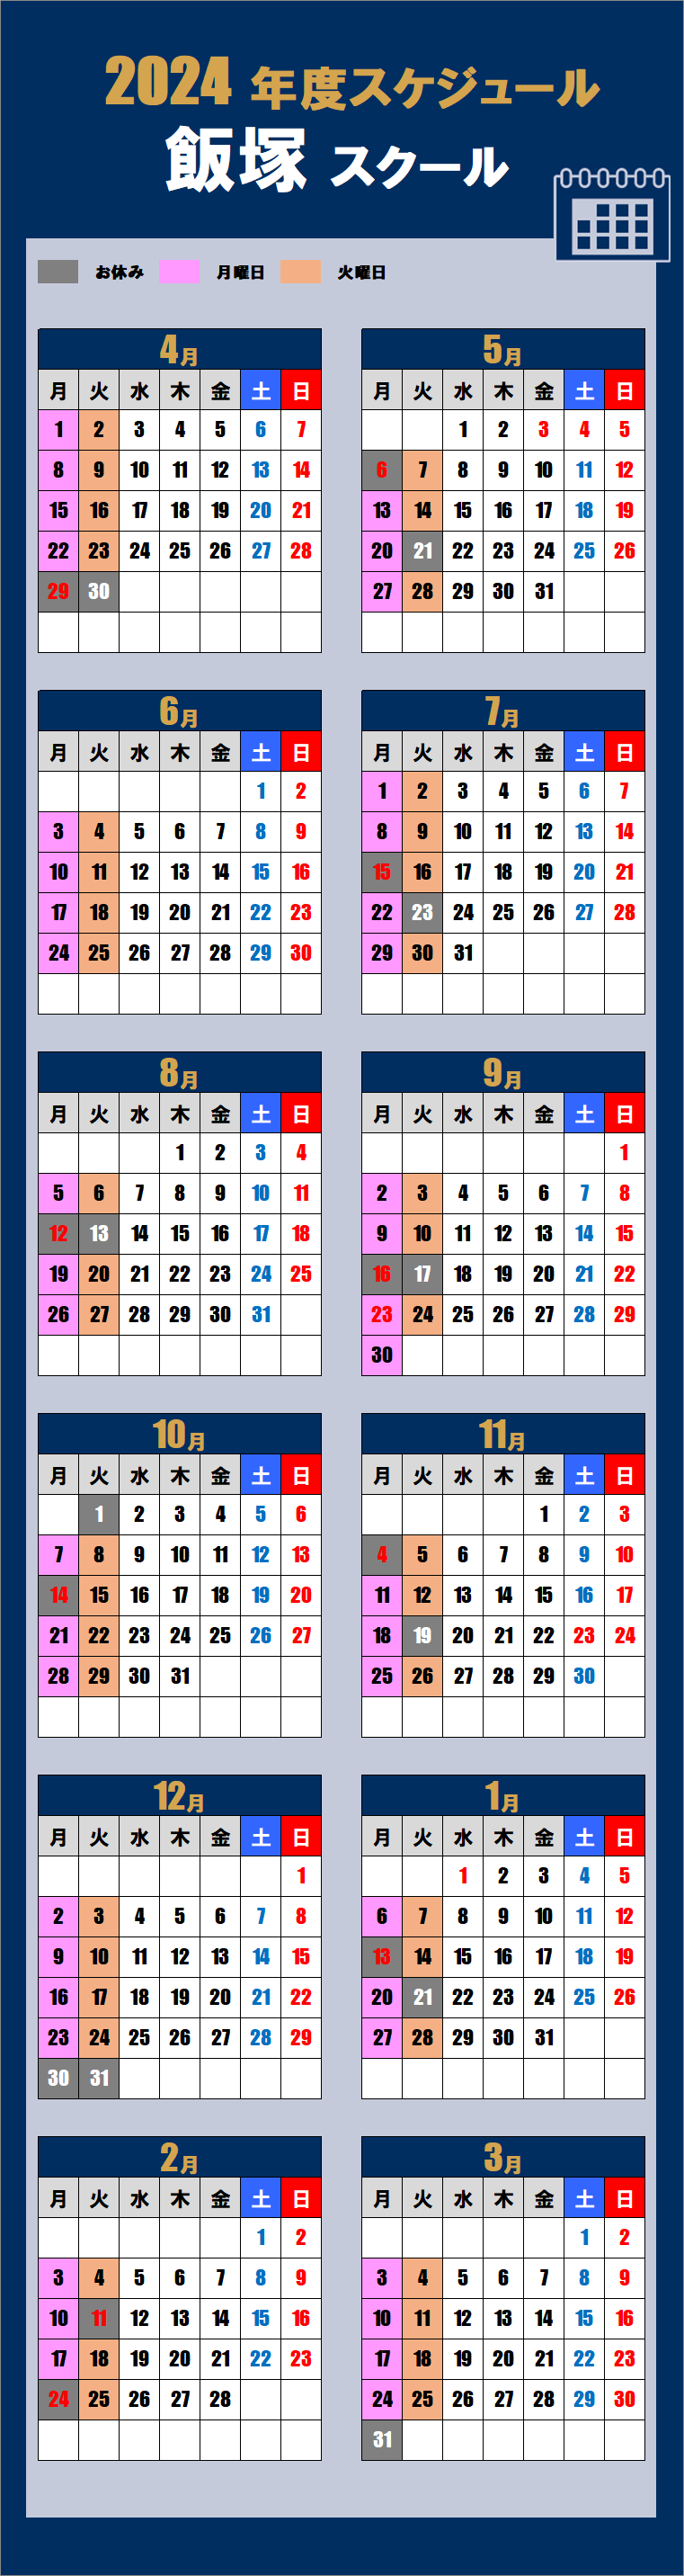 2024飯塚スクールカレンダー